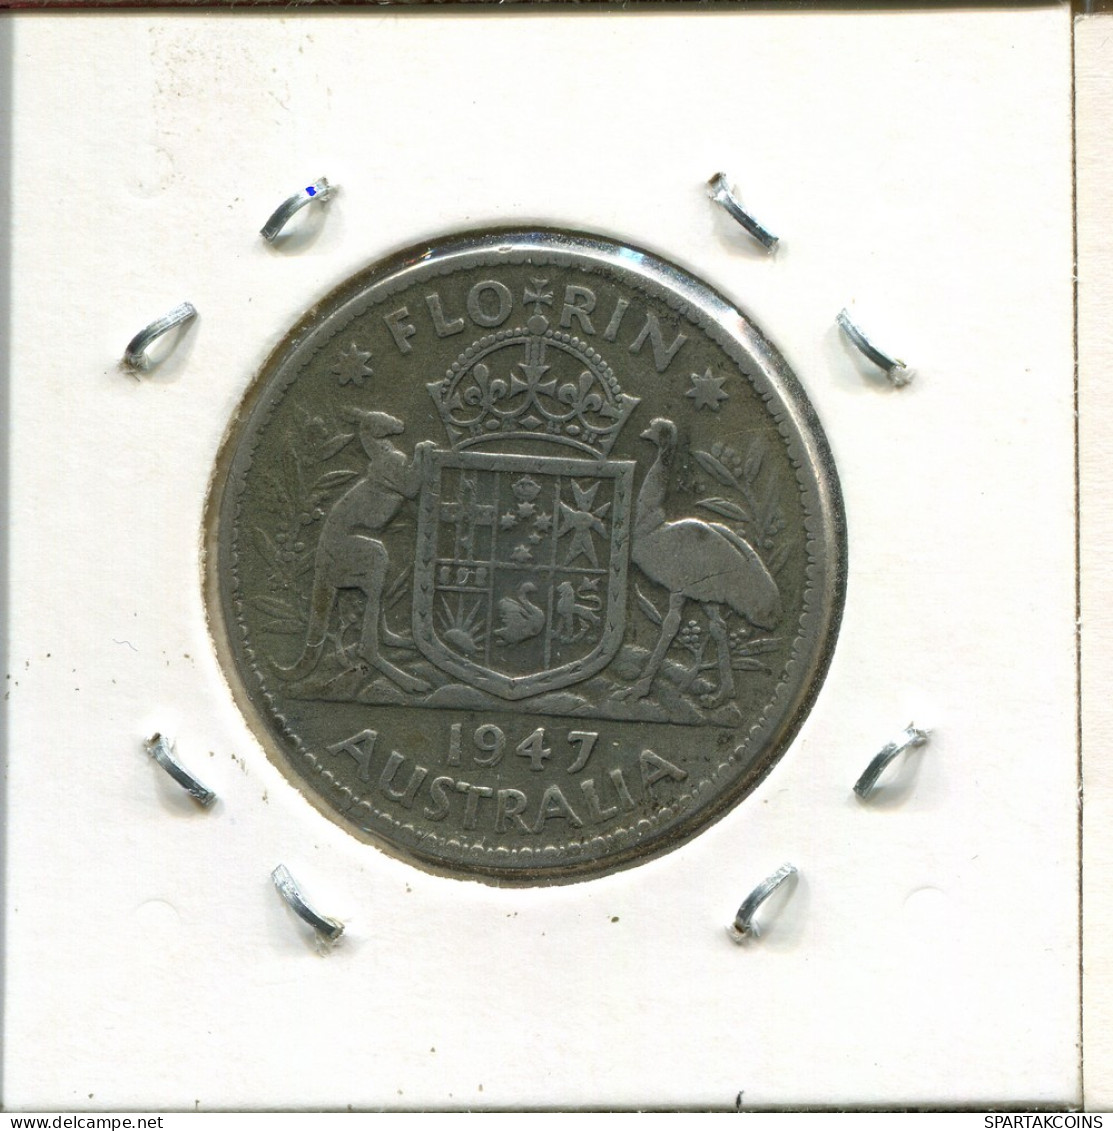 1 FLORIN 1947 AUSTRALIEN AUSTRALIA SILBER Münze #AS247.D - Florin